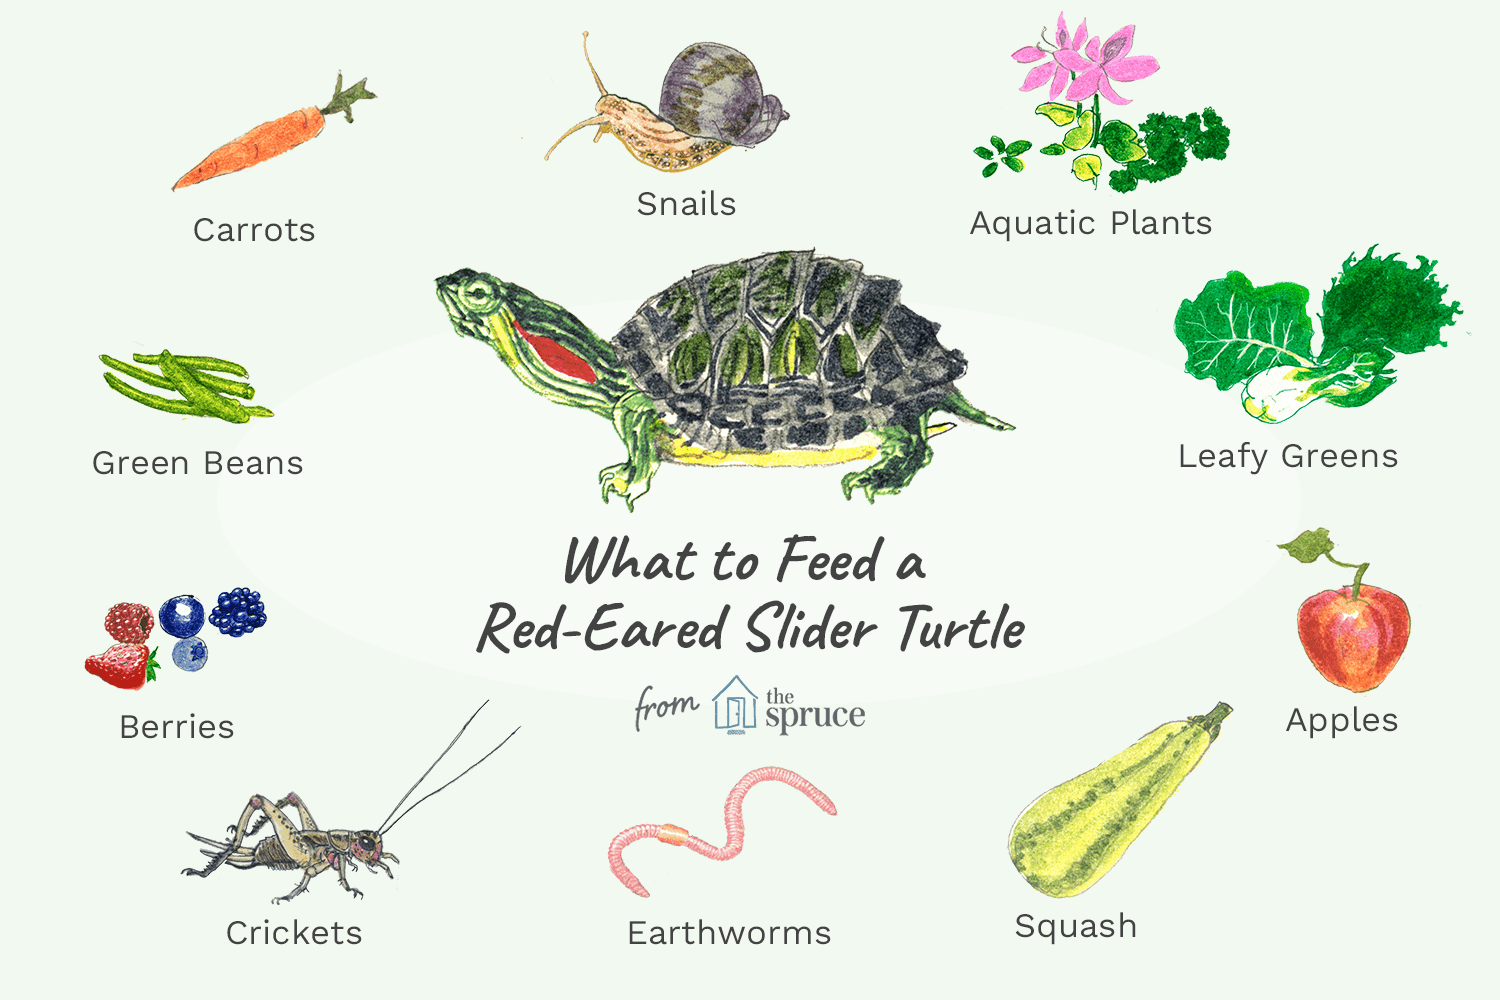 붉은귀 거북에게 무엇을 먹여야 하나요? 